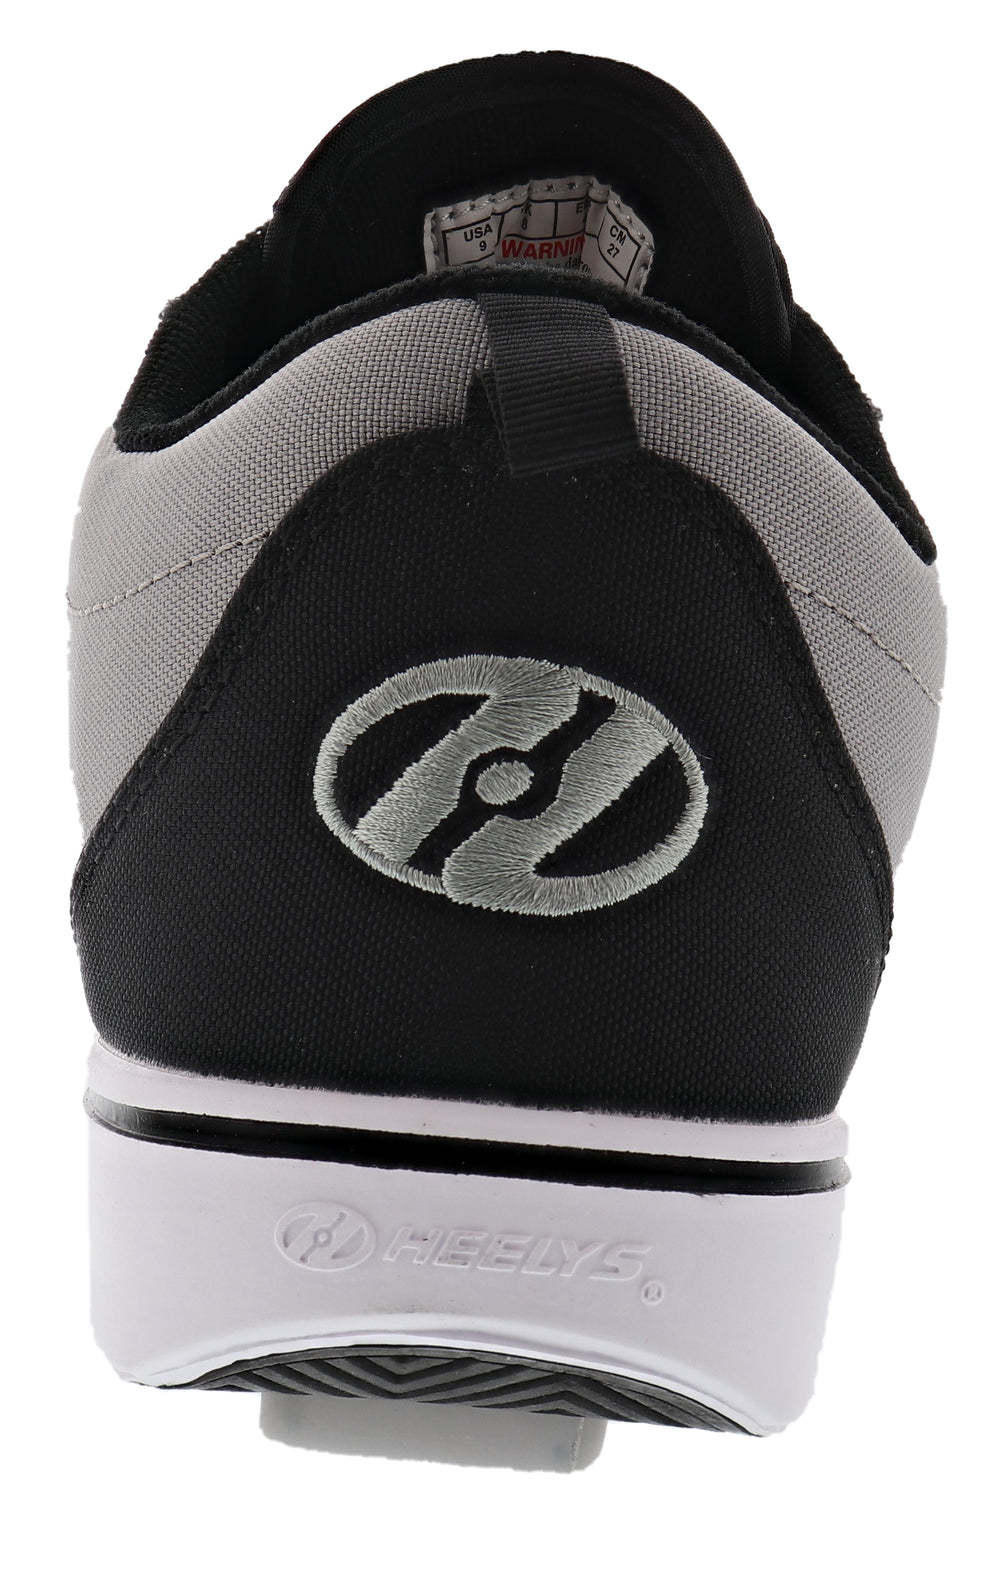 Heelys Shoes for adults Pro 20 - Men's | Shoe City